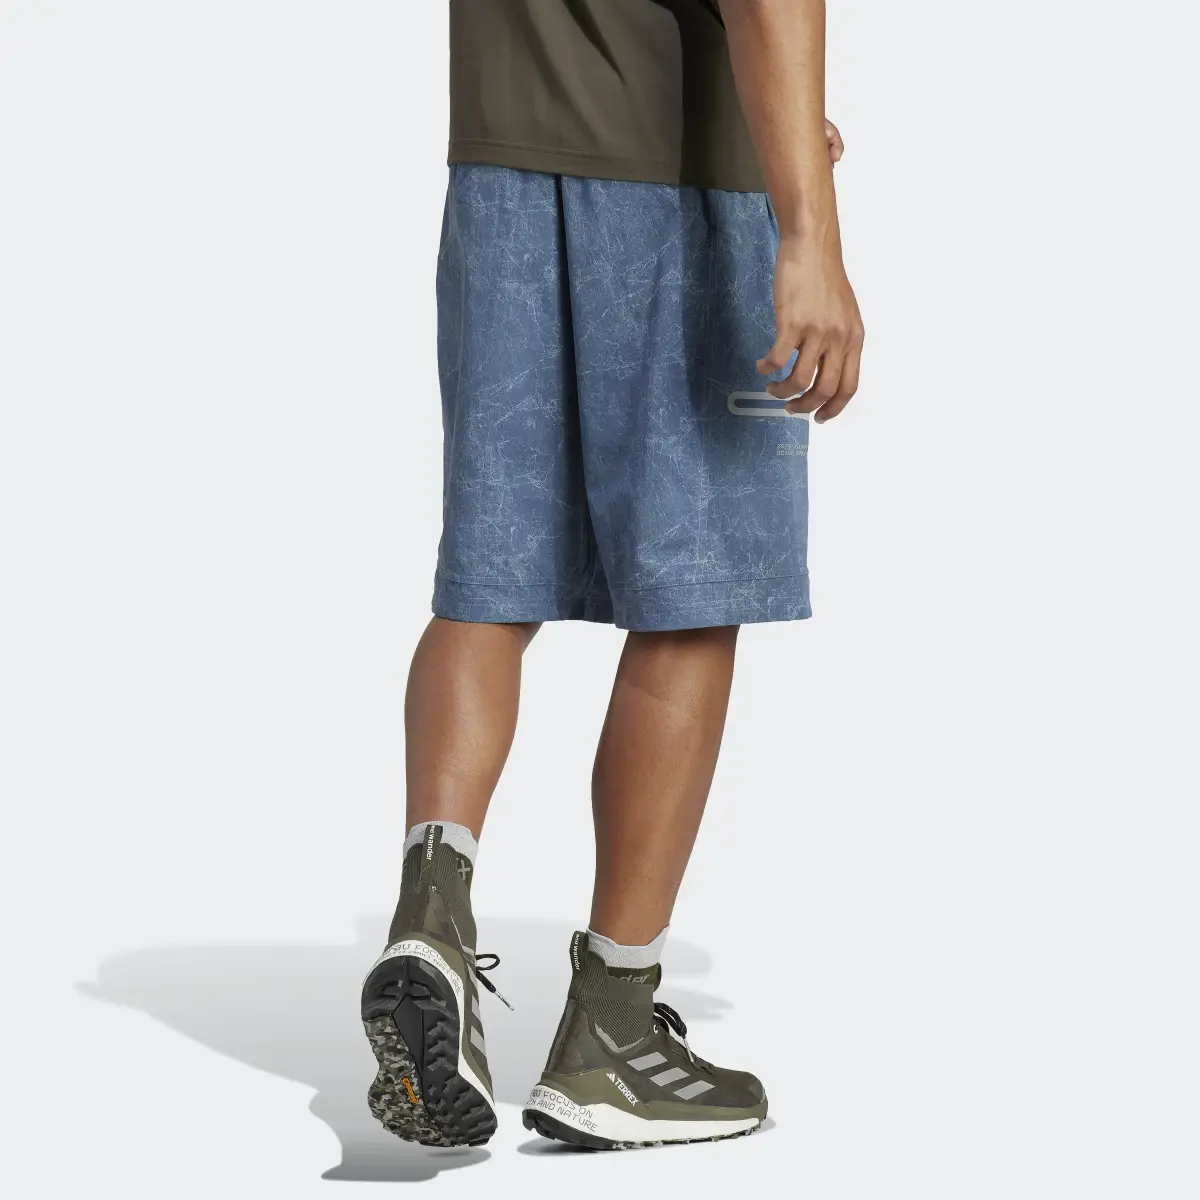 Adidas Terrex + and wander Shorts. 3